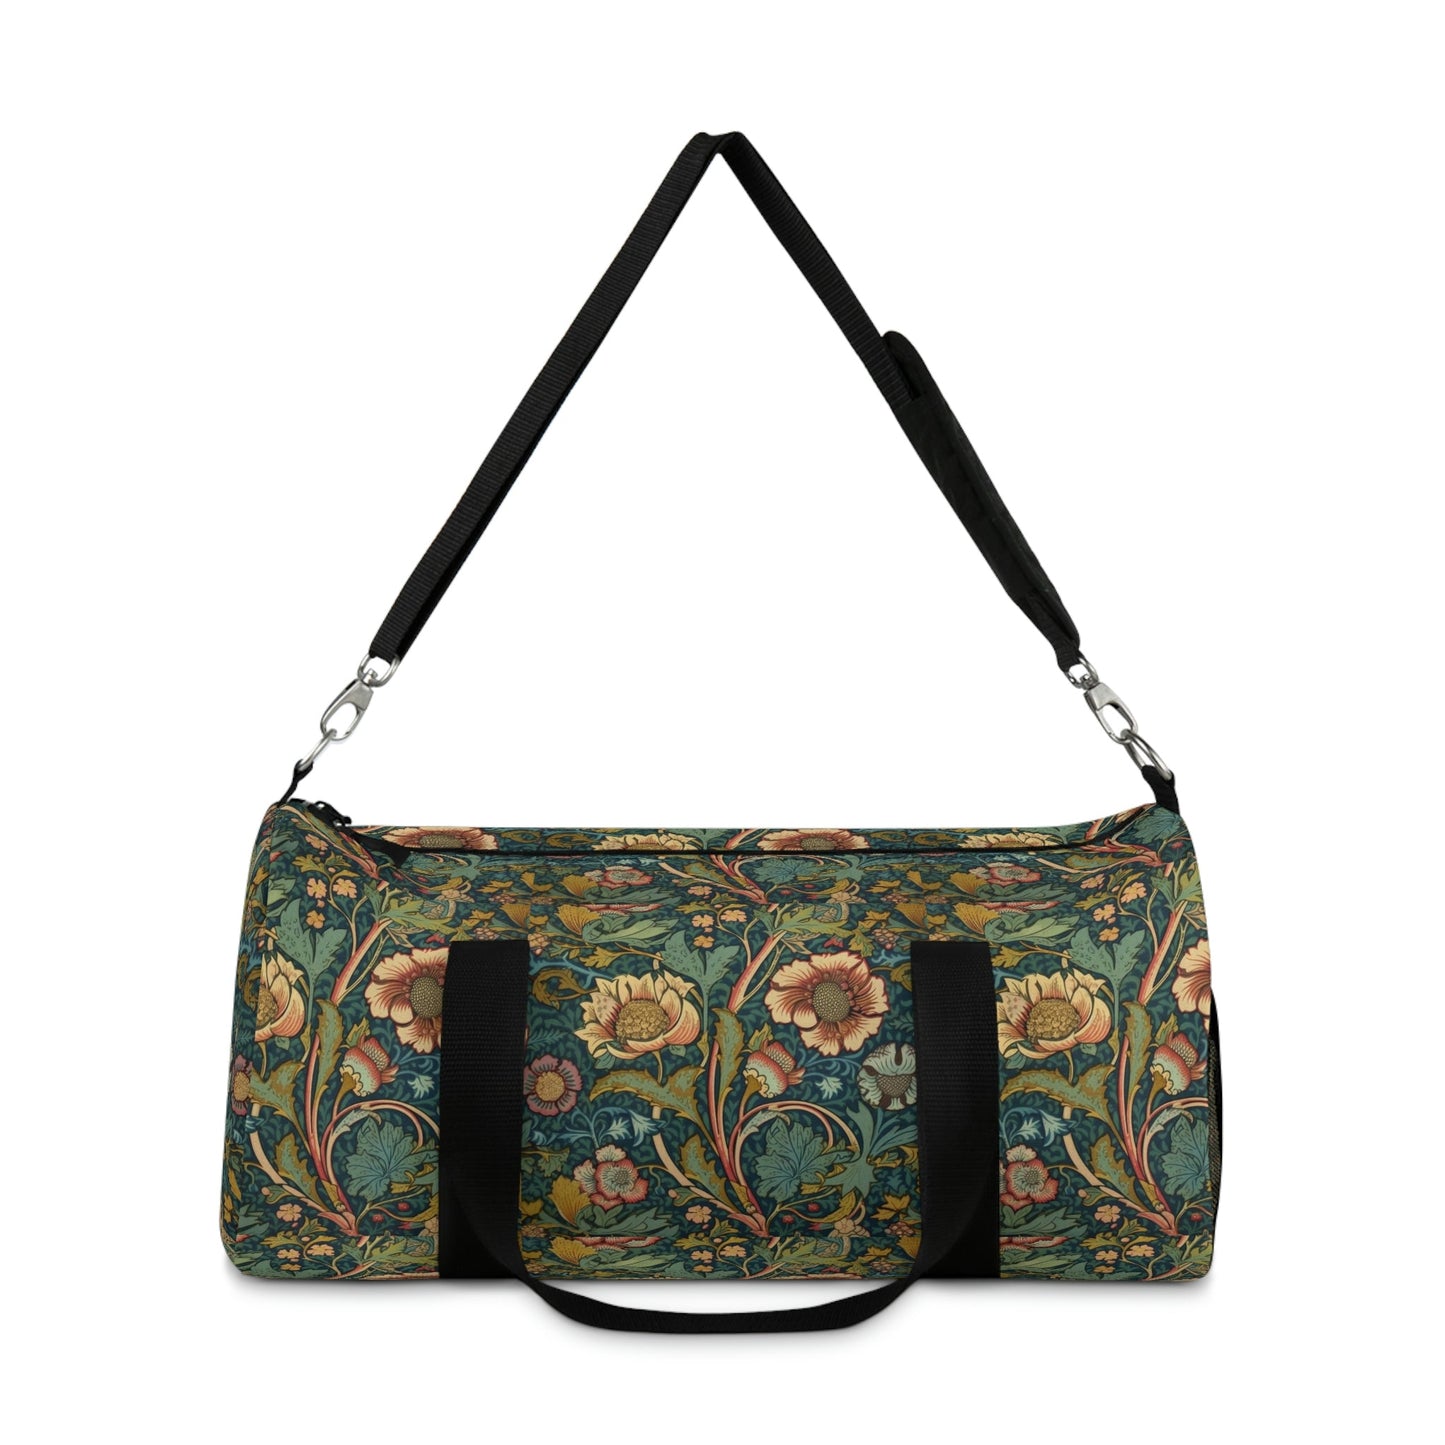 Vintage Victorian Floral Design Duffel Bag